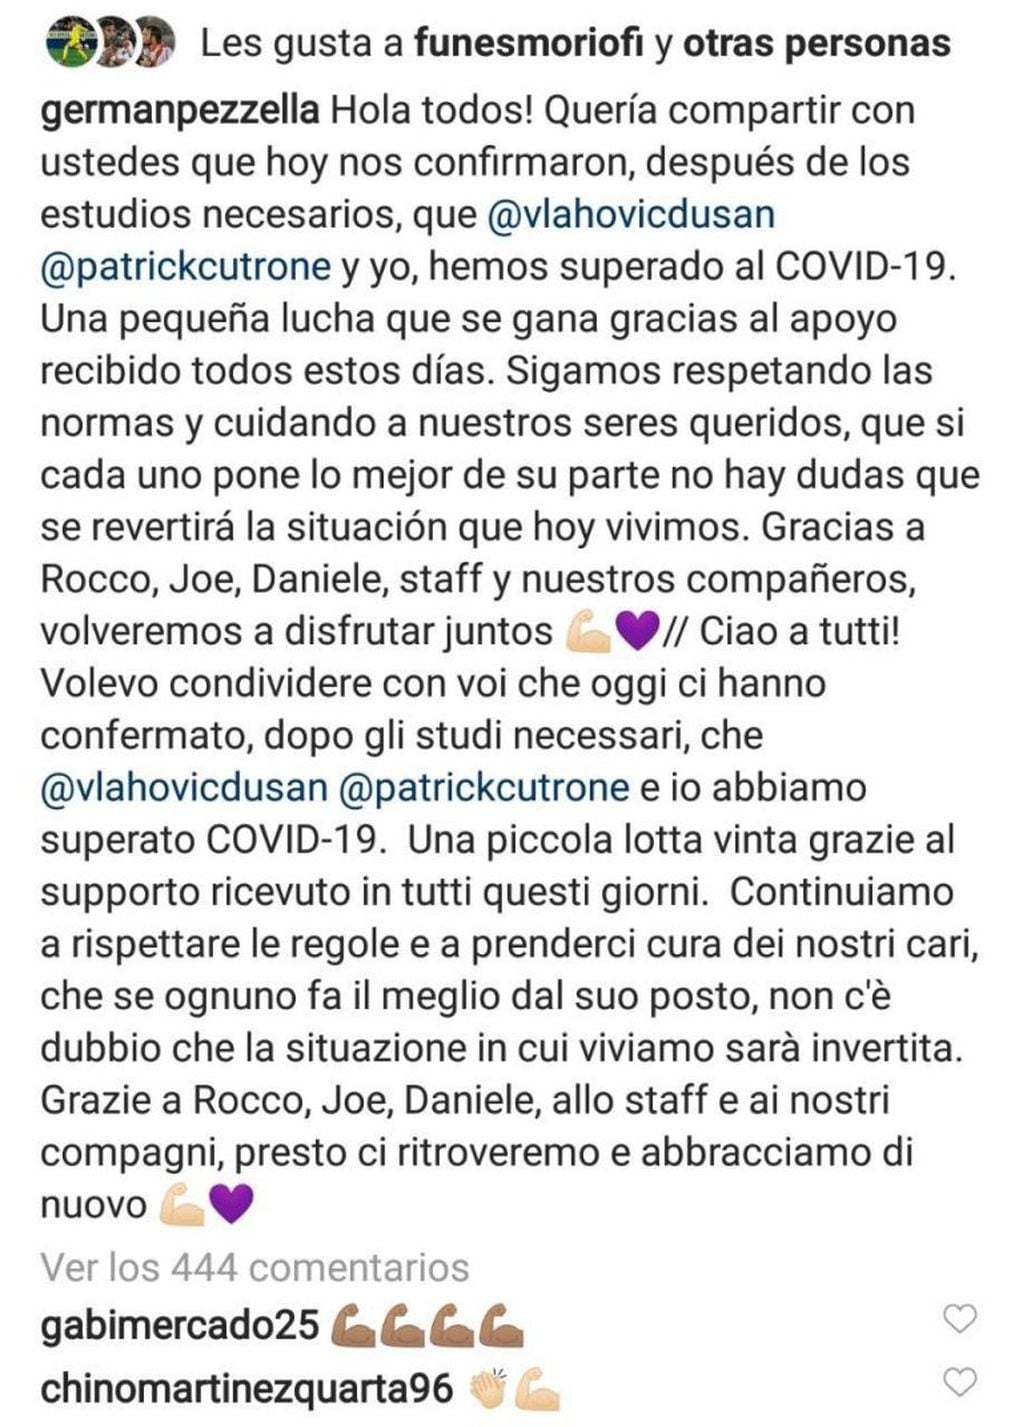 El mensaje en la cuenta de Instagram de Germán Pezzella